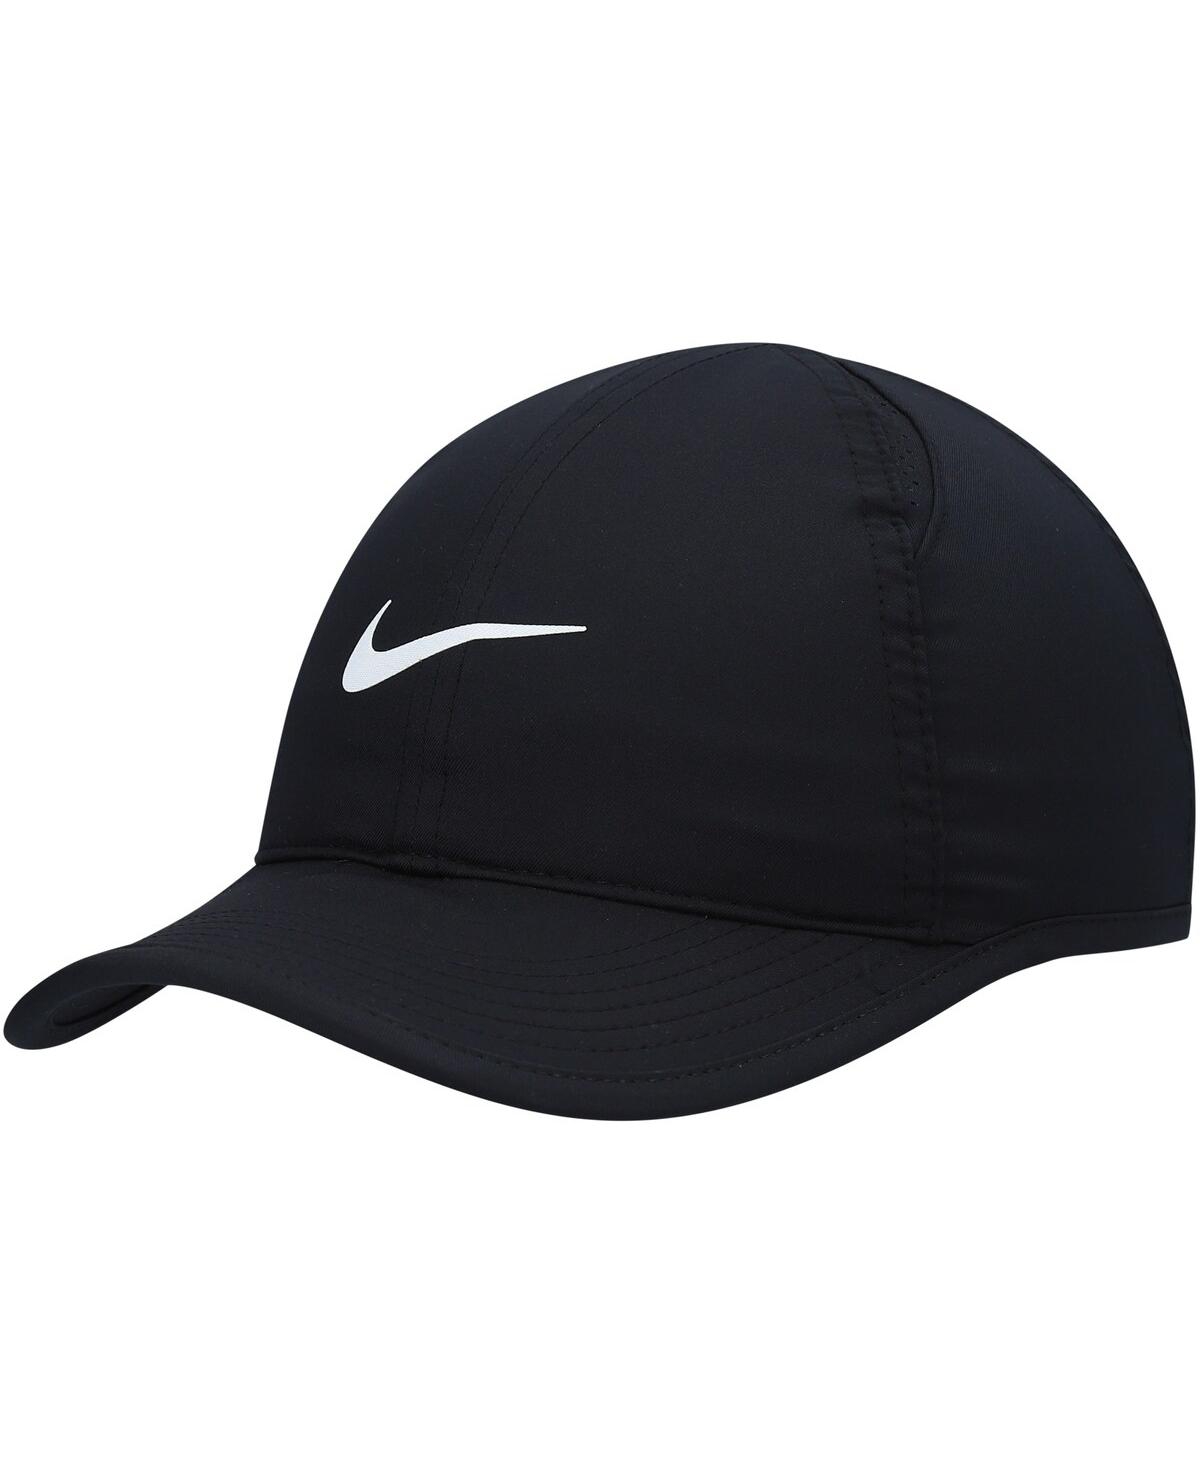 Nike Kids' Boys Black Featherlight Performance Adjustable Hat